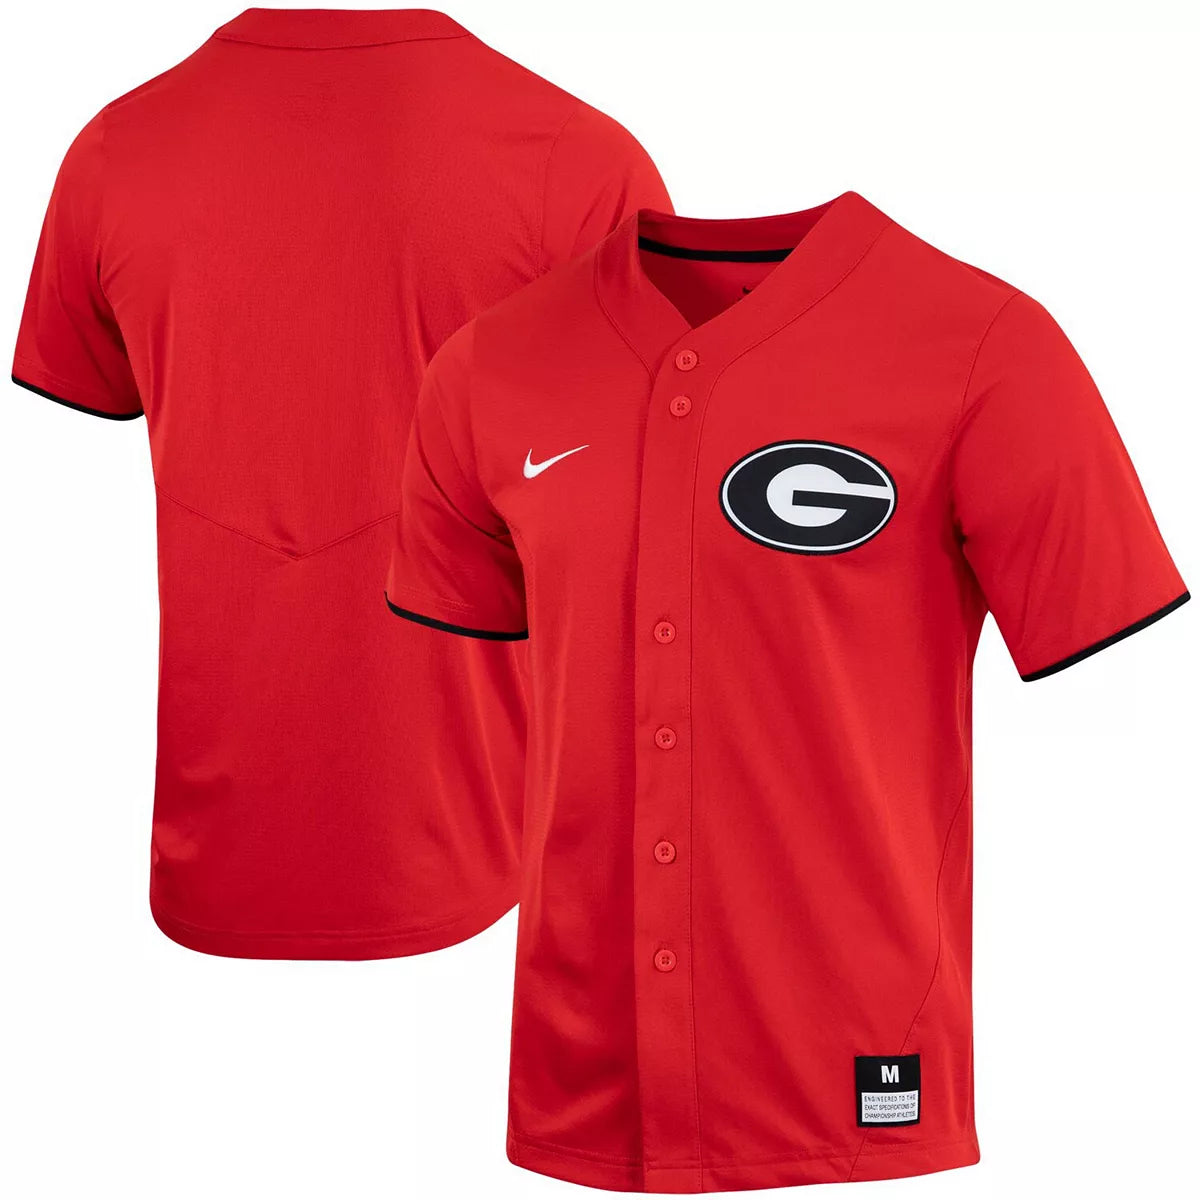 UGA Georgia Bulldogs Nike Baseball Jersey -Red 3X